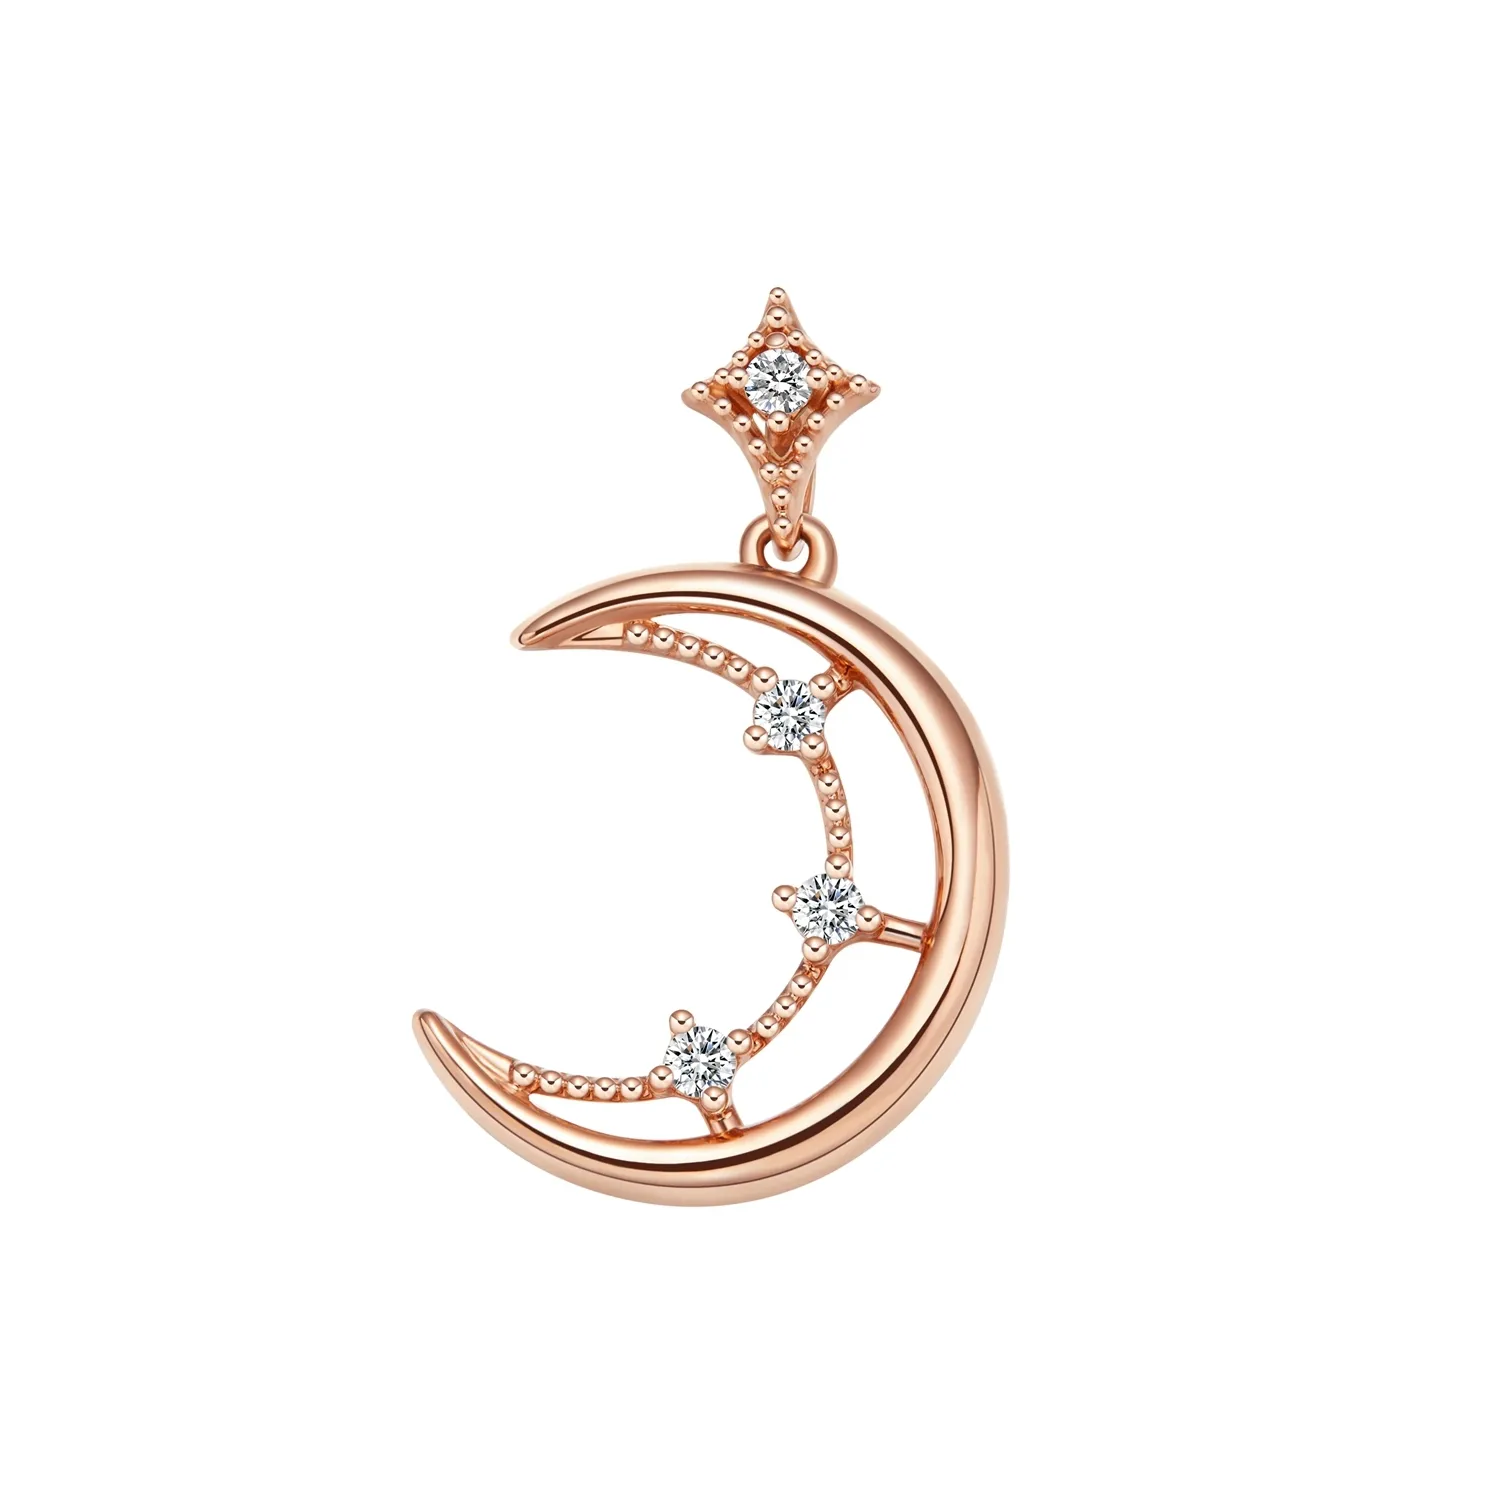 Jingzhanyi sert plus de 30 marques de bijoux dans le monde entier 18K or diamant étoile lune pendentif PT950 diamant pendentif personnalisation